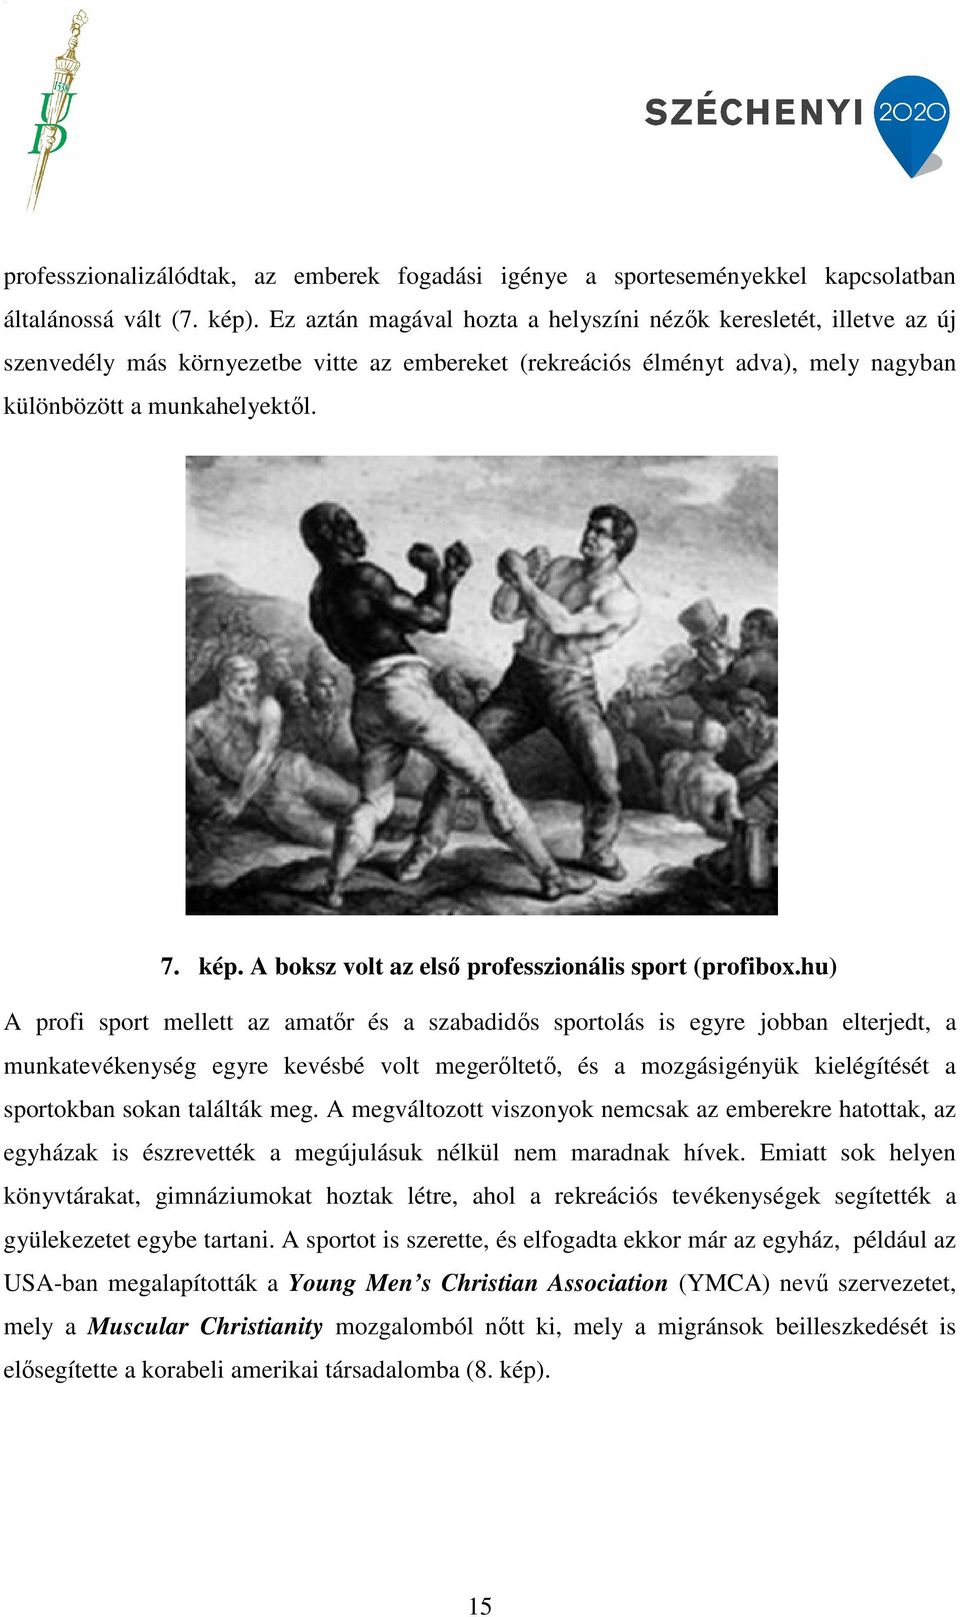 A boksz volt az első professzionális sport (profibox.